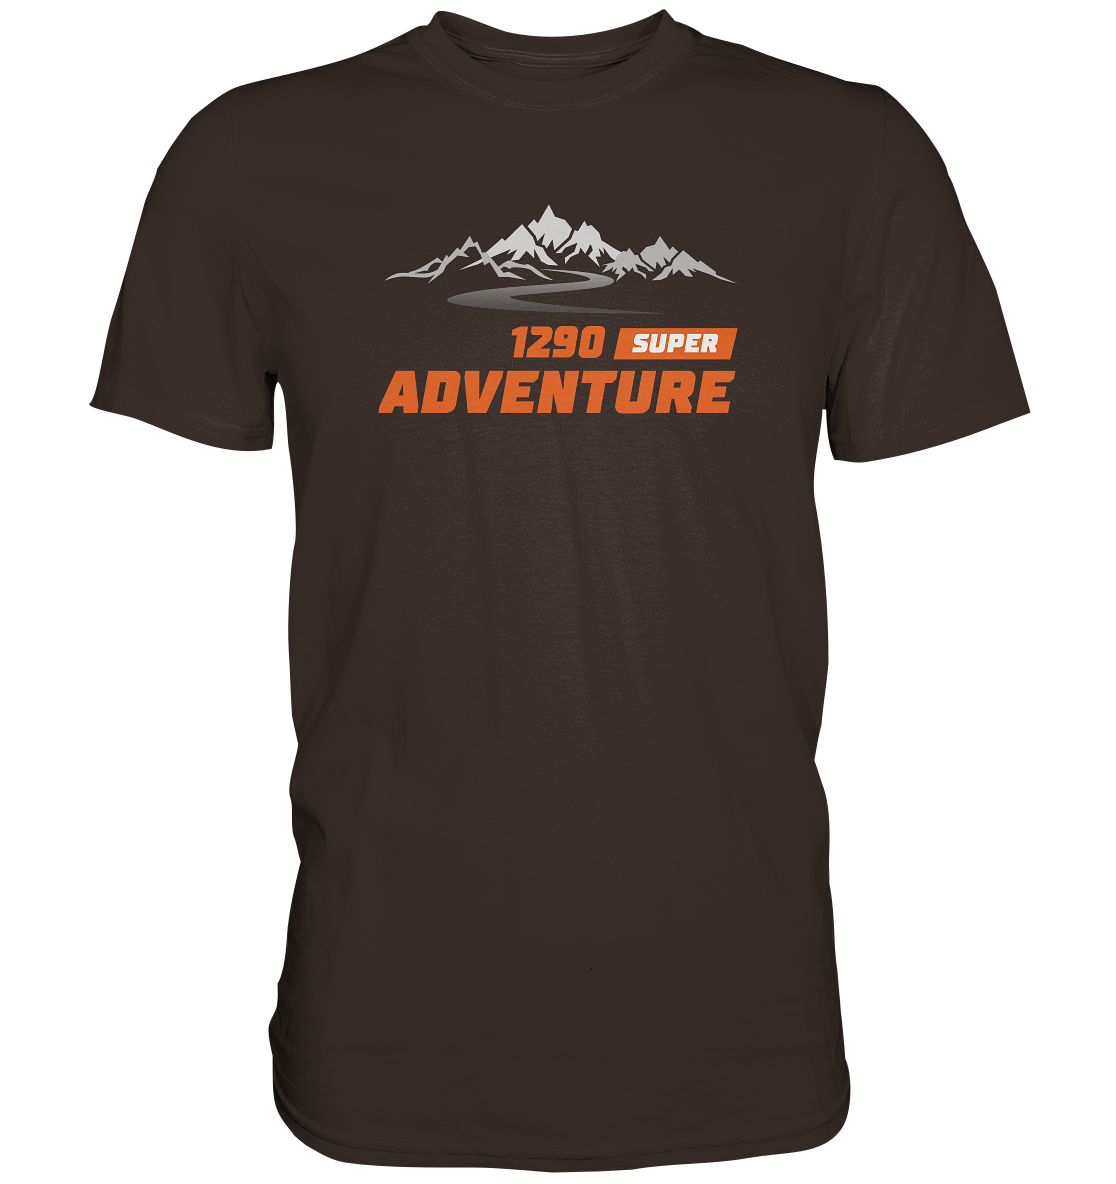 Super Adventure 1290 Tourmotiv - Premium unisex Shirt